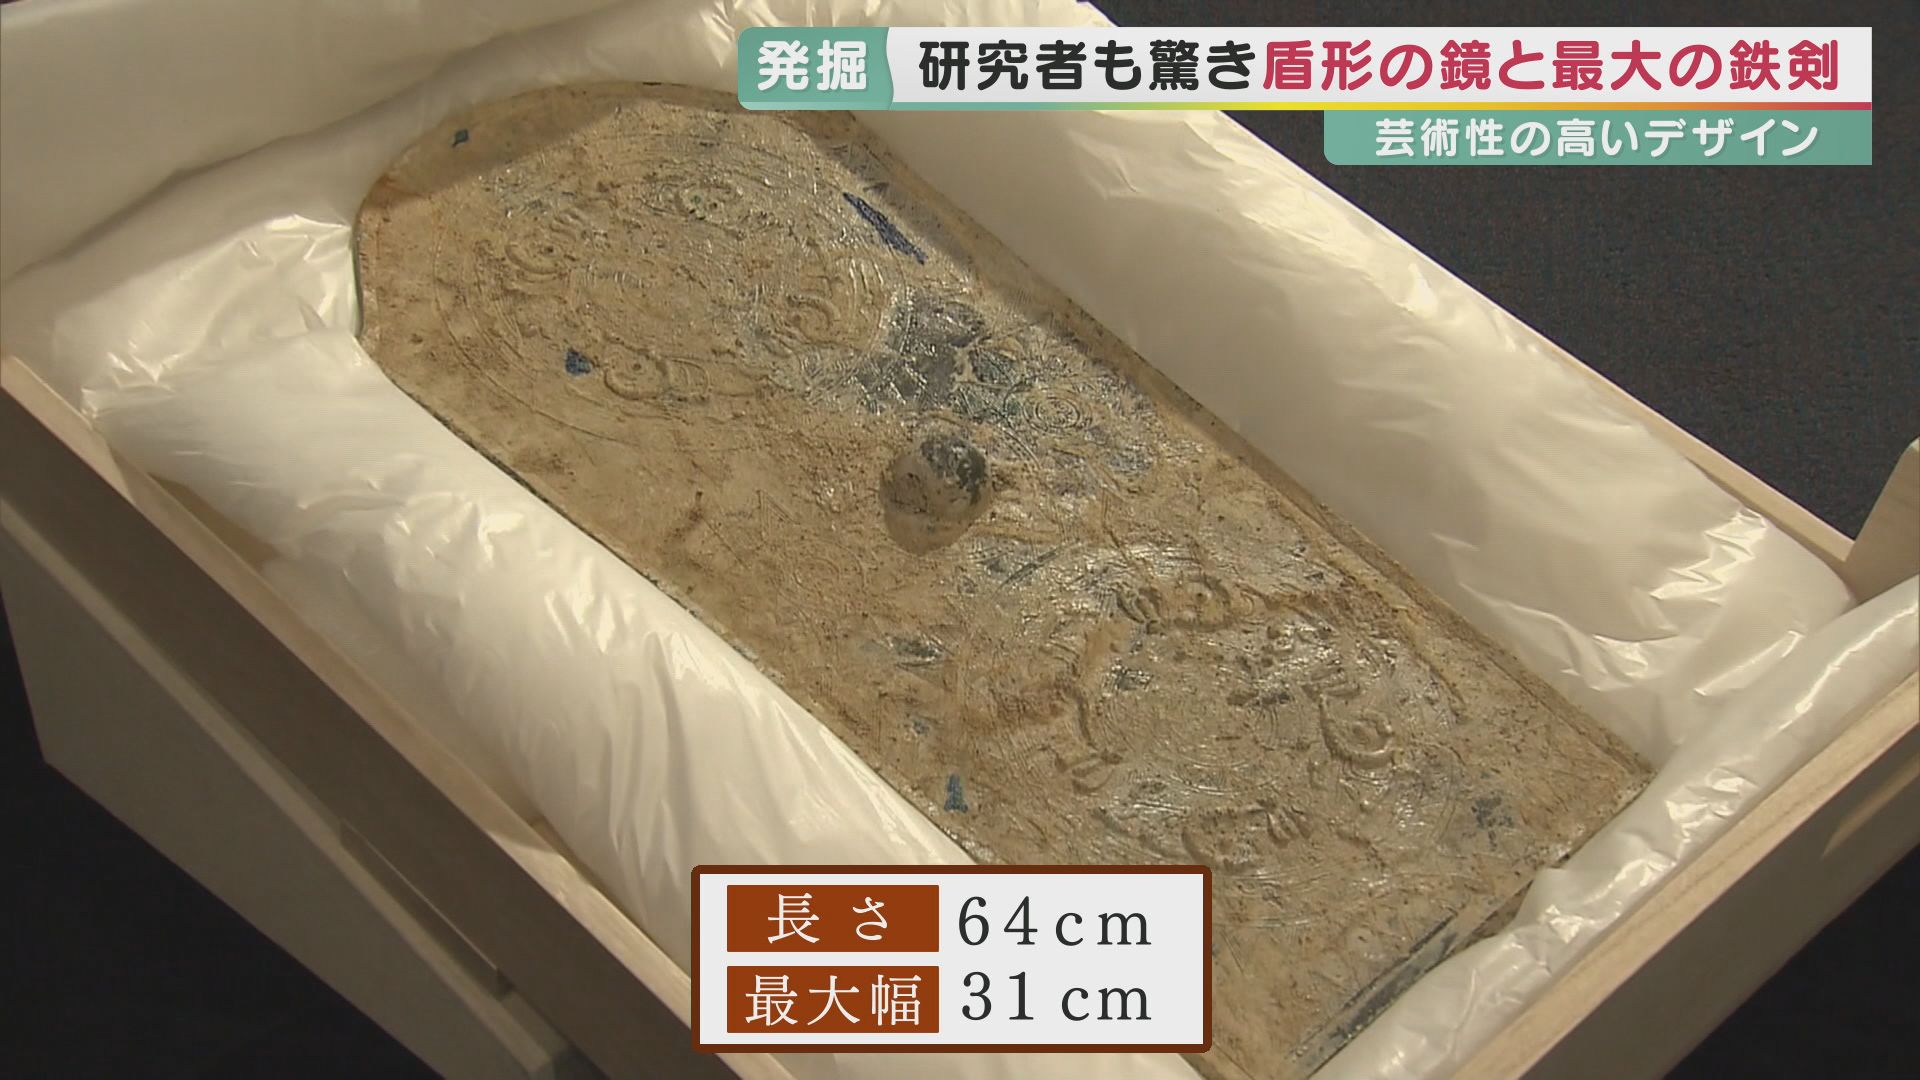 国宝級発見が一挙に2つ　精緻な文様の「盾形銅鏡」・最大級2.37mの「蛇行剣」　ともに日本最大の円形古墳「富雄丸山古墳」から見つかる